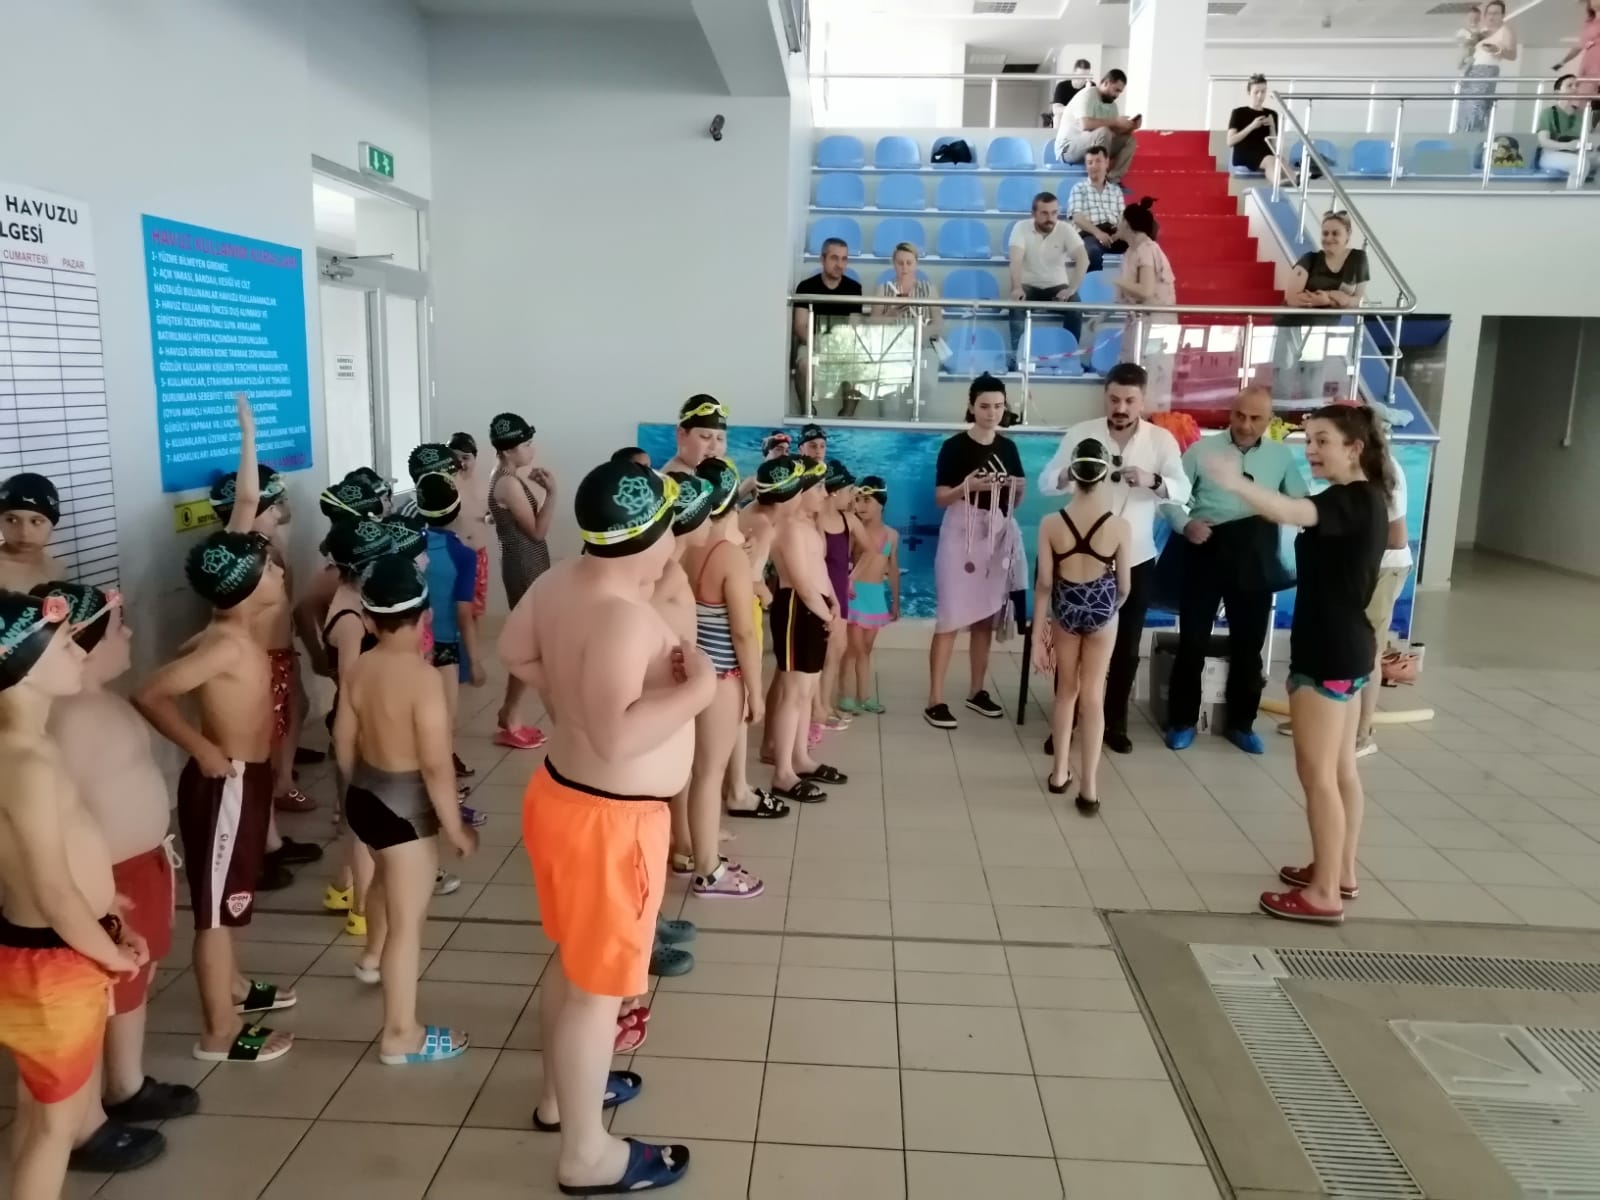 Süleymanpaşa Belediyesi Kış Okulu, 90 öğrenciye yüzme öğretti